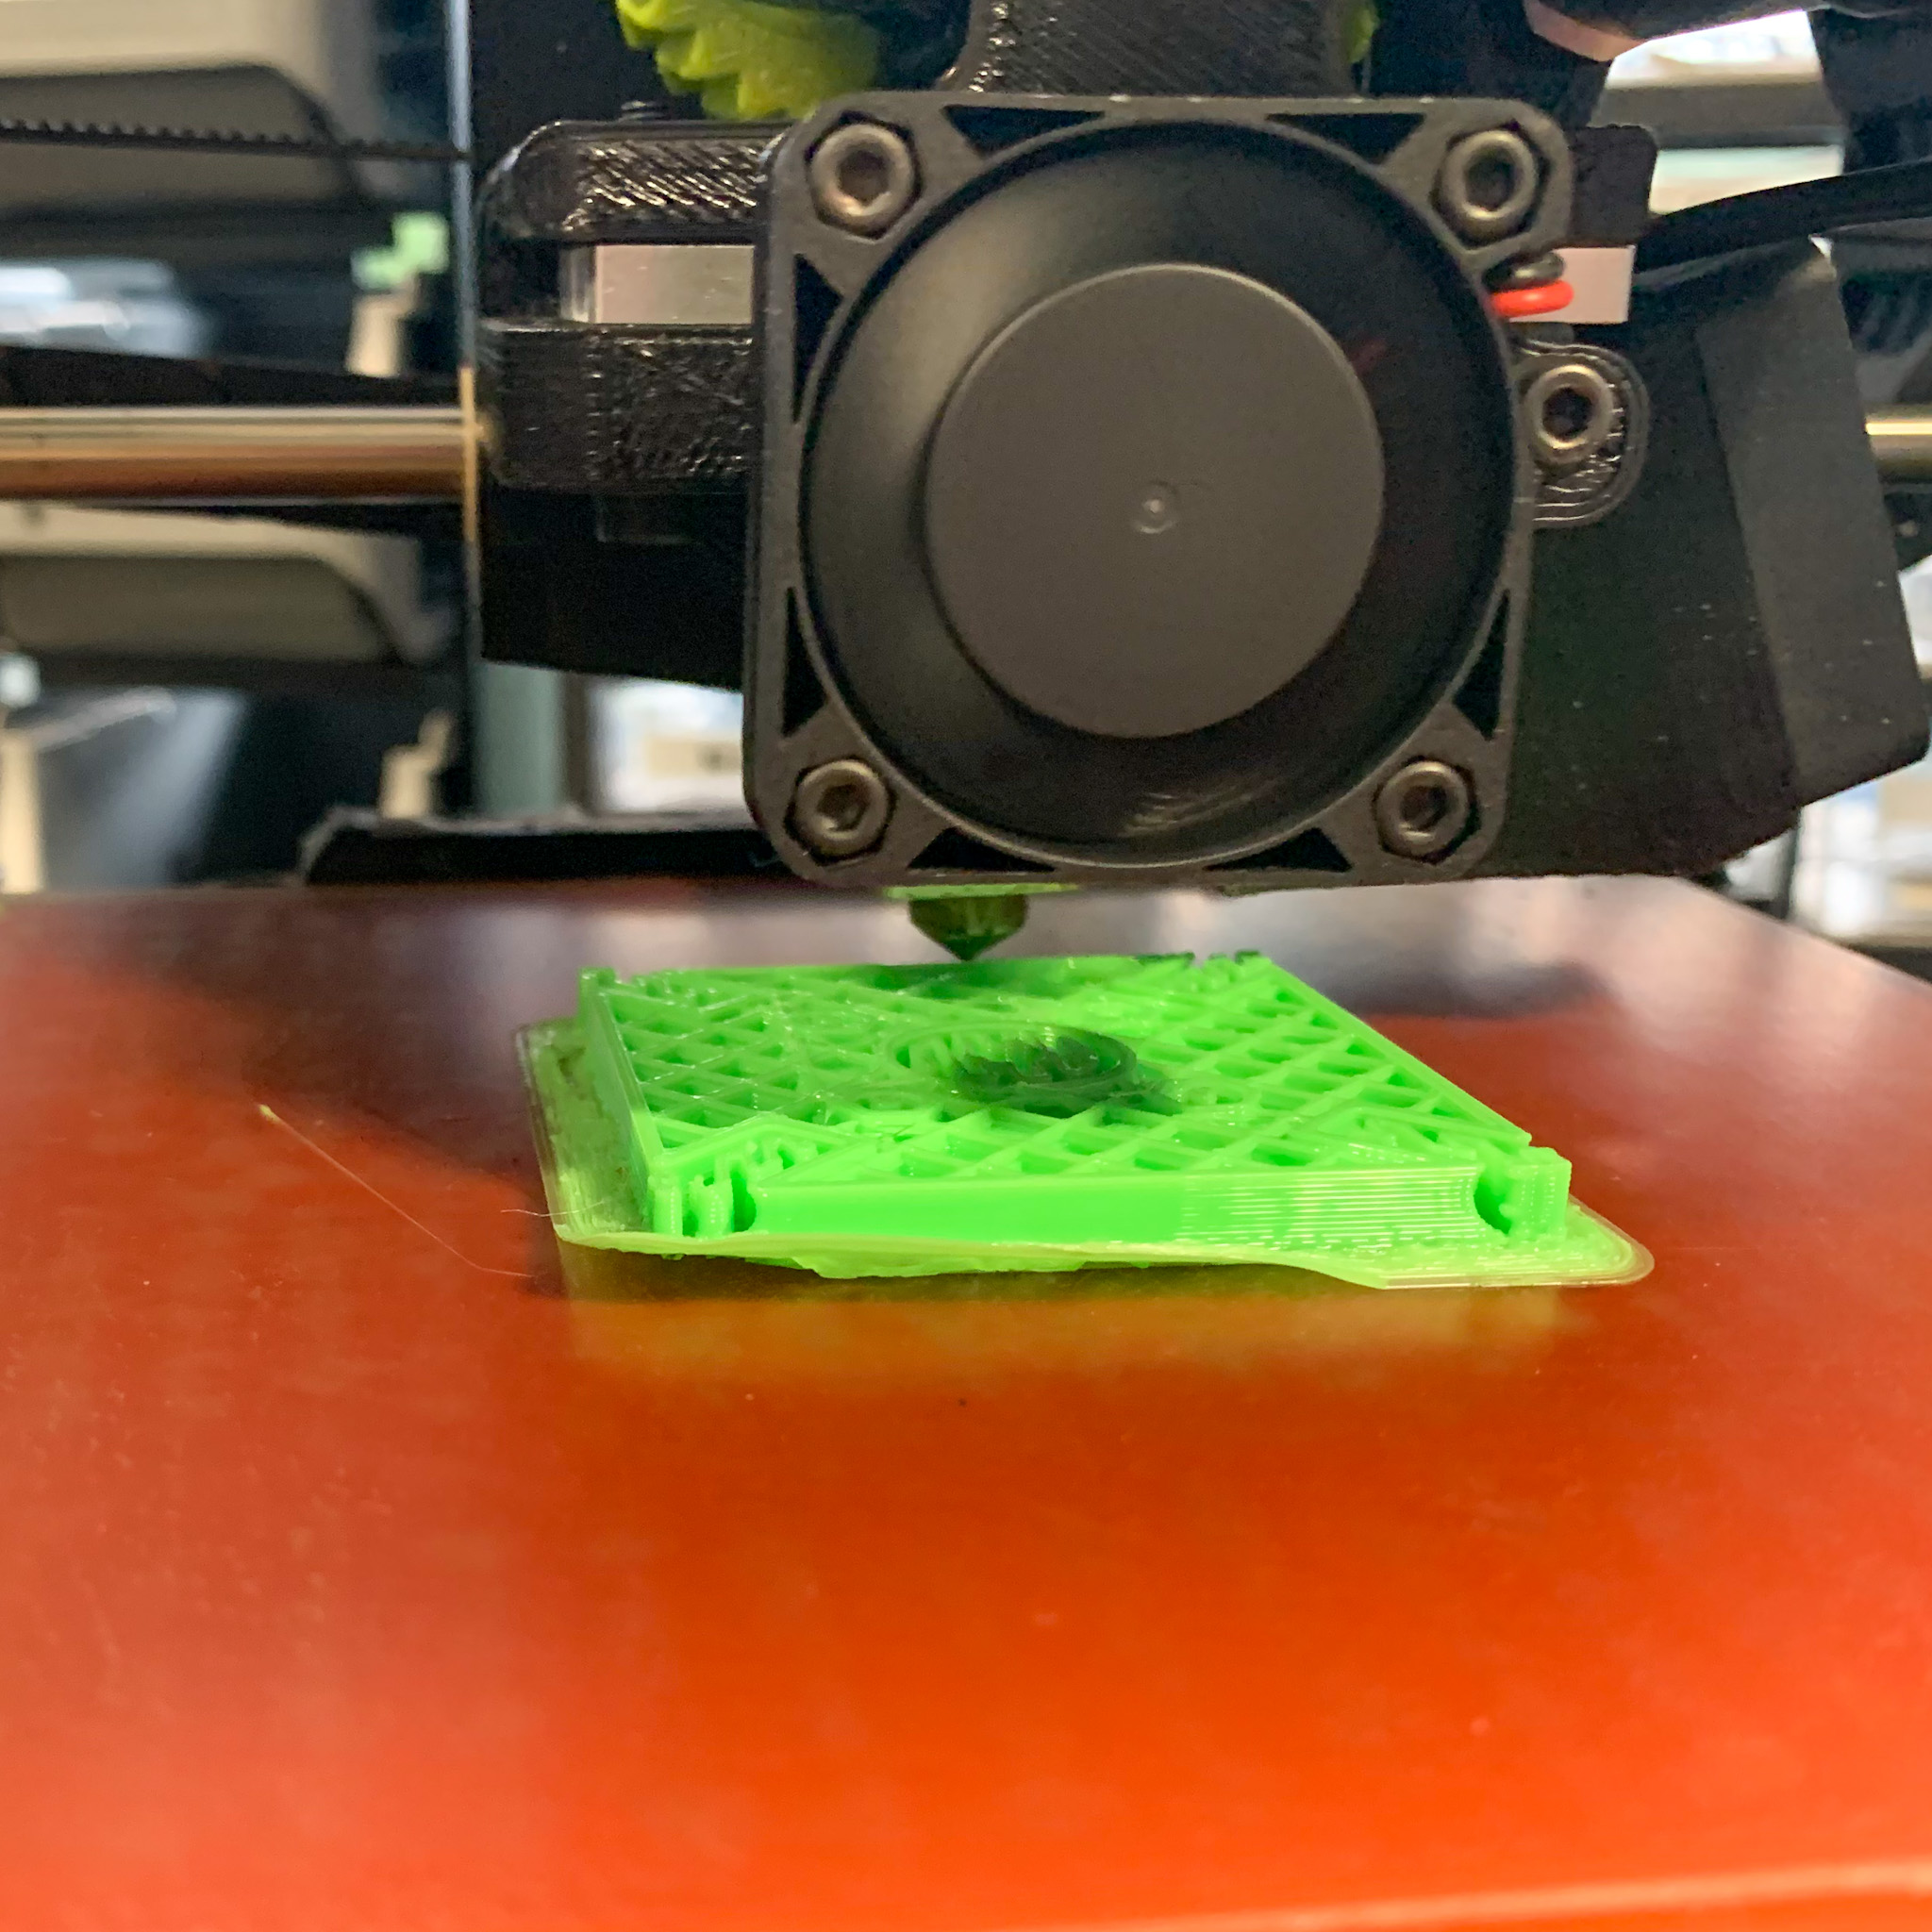 An uneven 3D Printer output